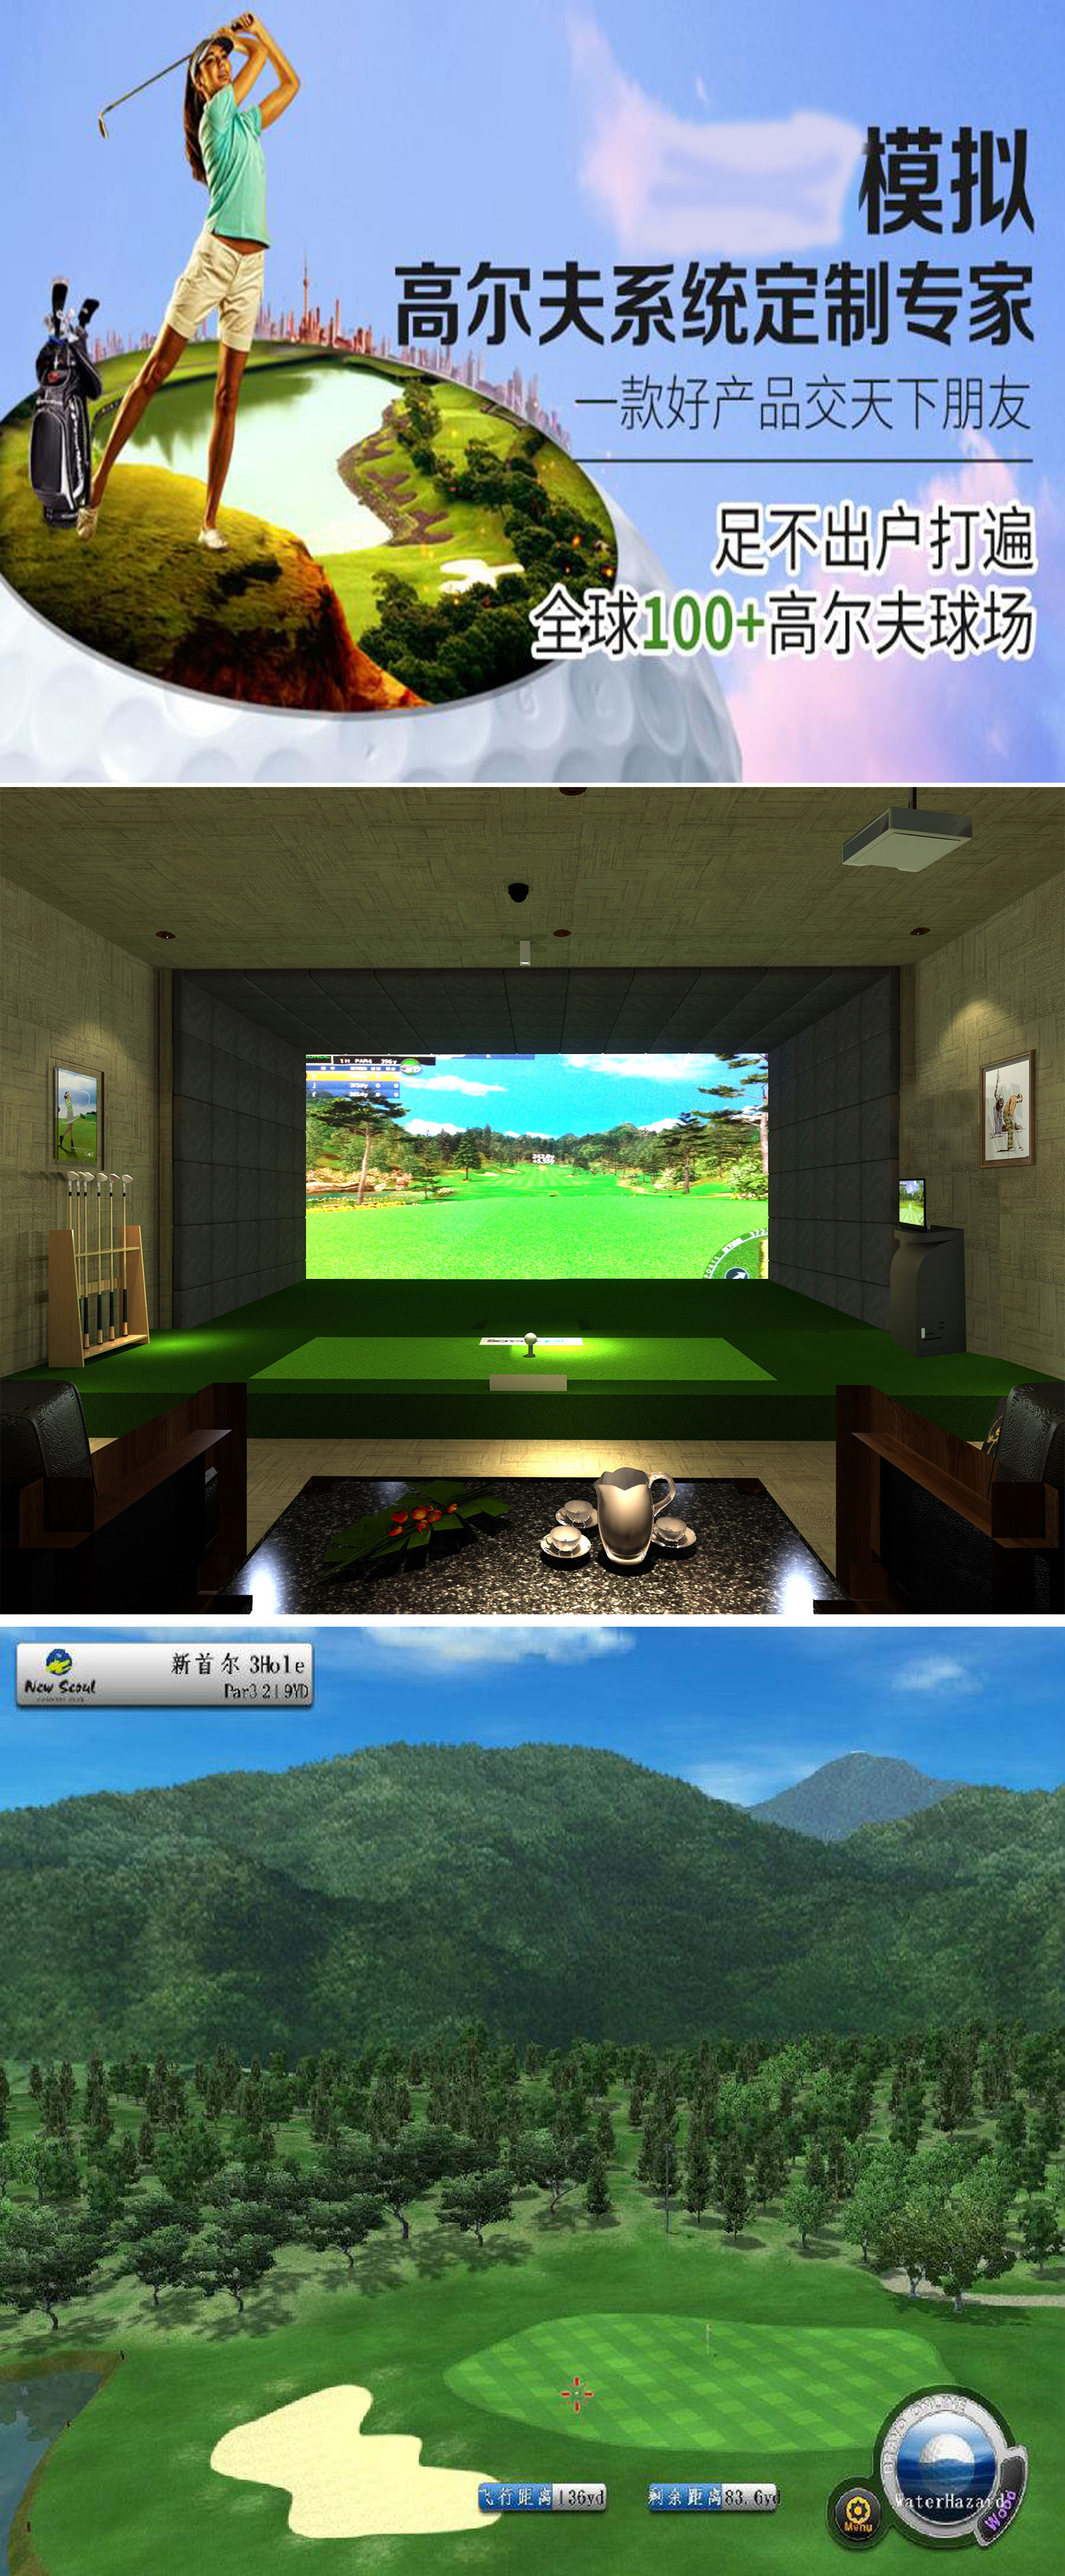 韩国室内高尔夫设备介绍 4.jpg